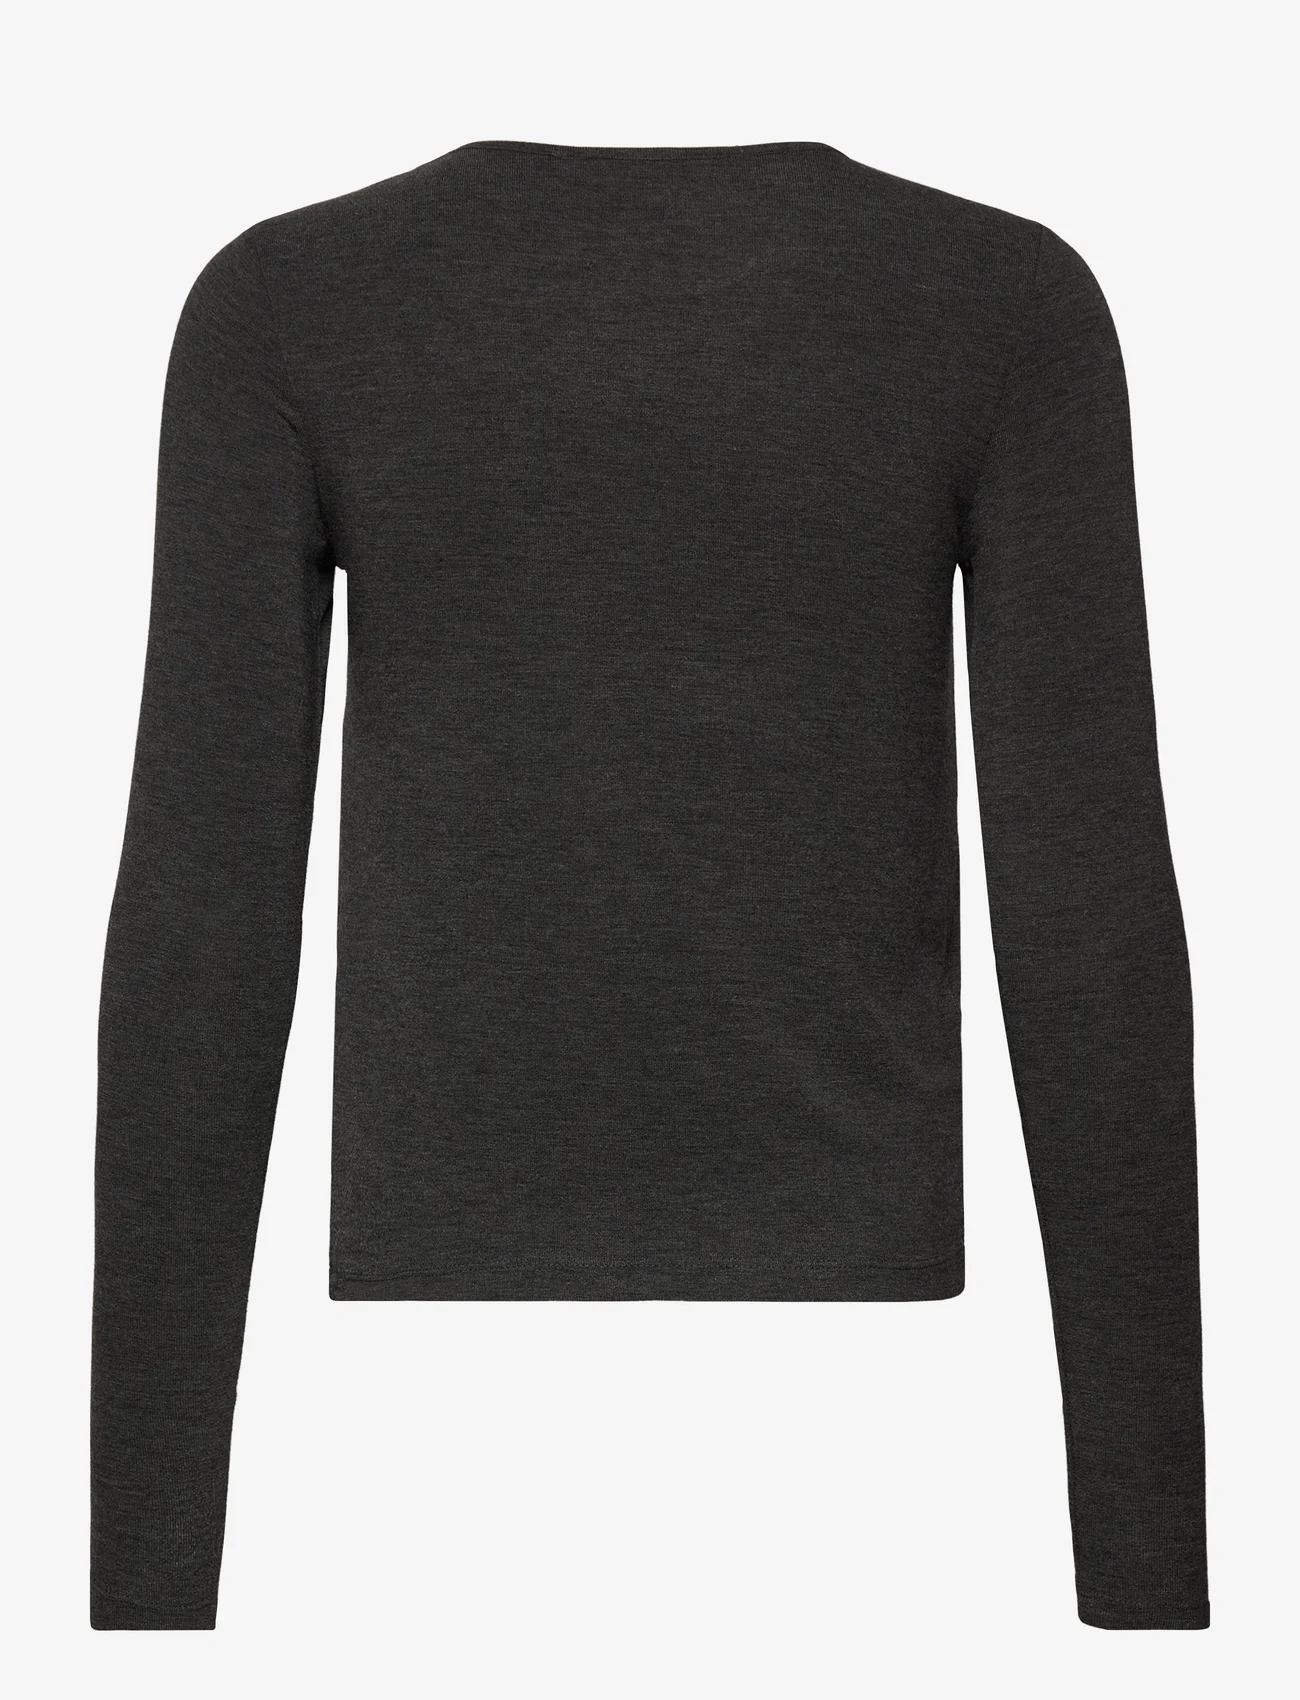 Mango - Round neck knit t-shirt - laveste priser - dark grey - 1